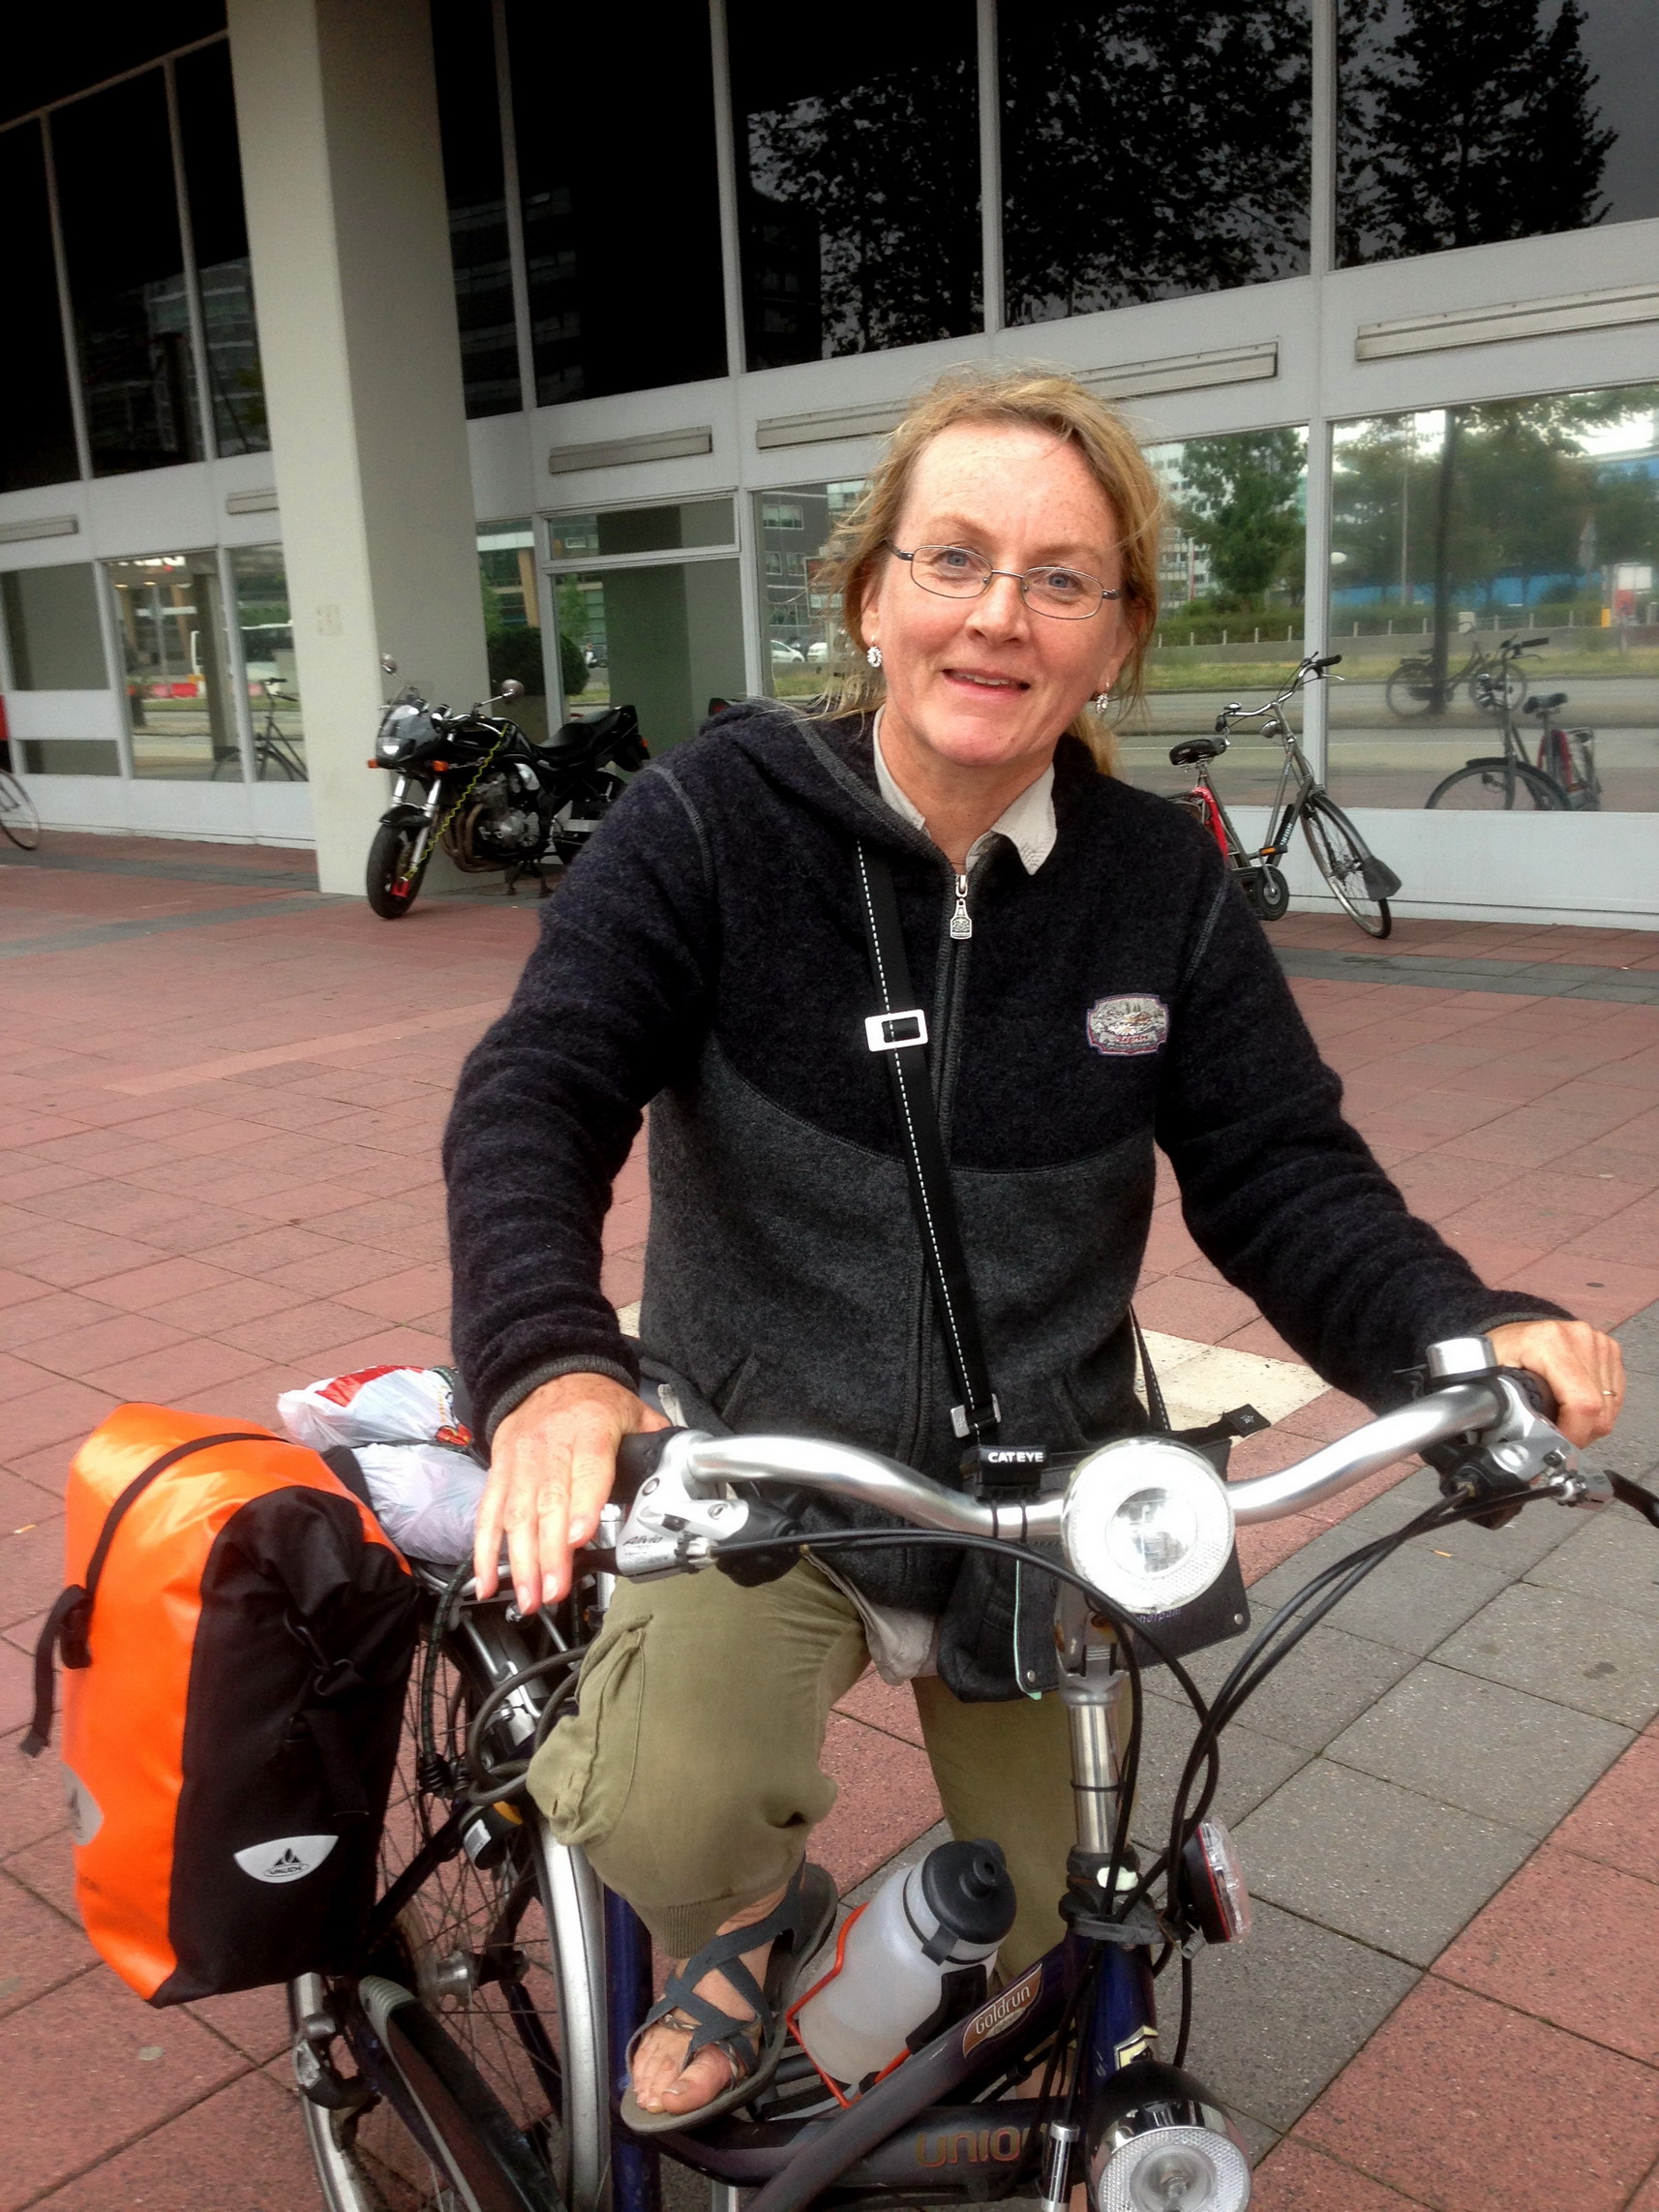 Irma uit Arle-Rixtel waarmee van Loenen naar Utrecht fietste.